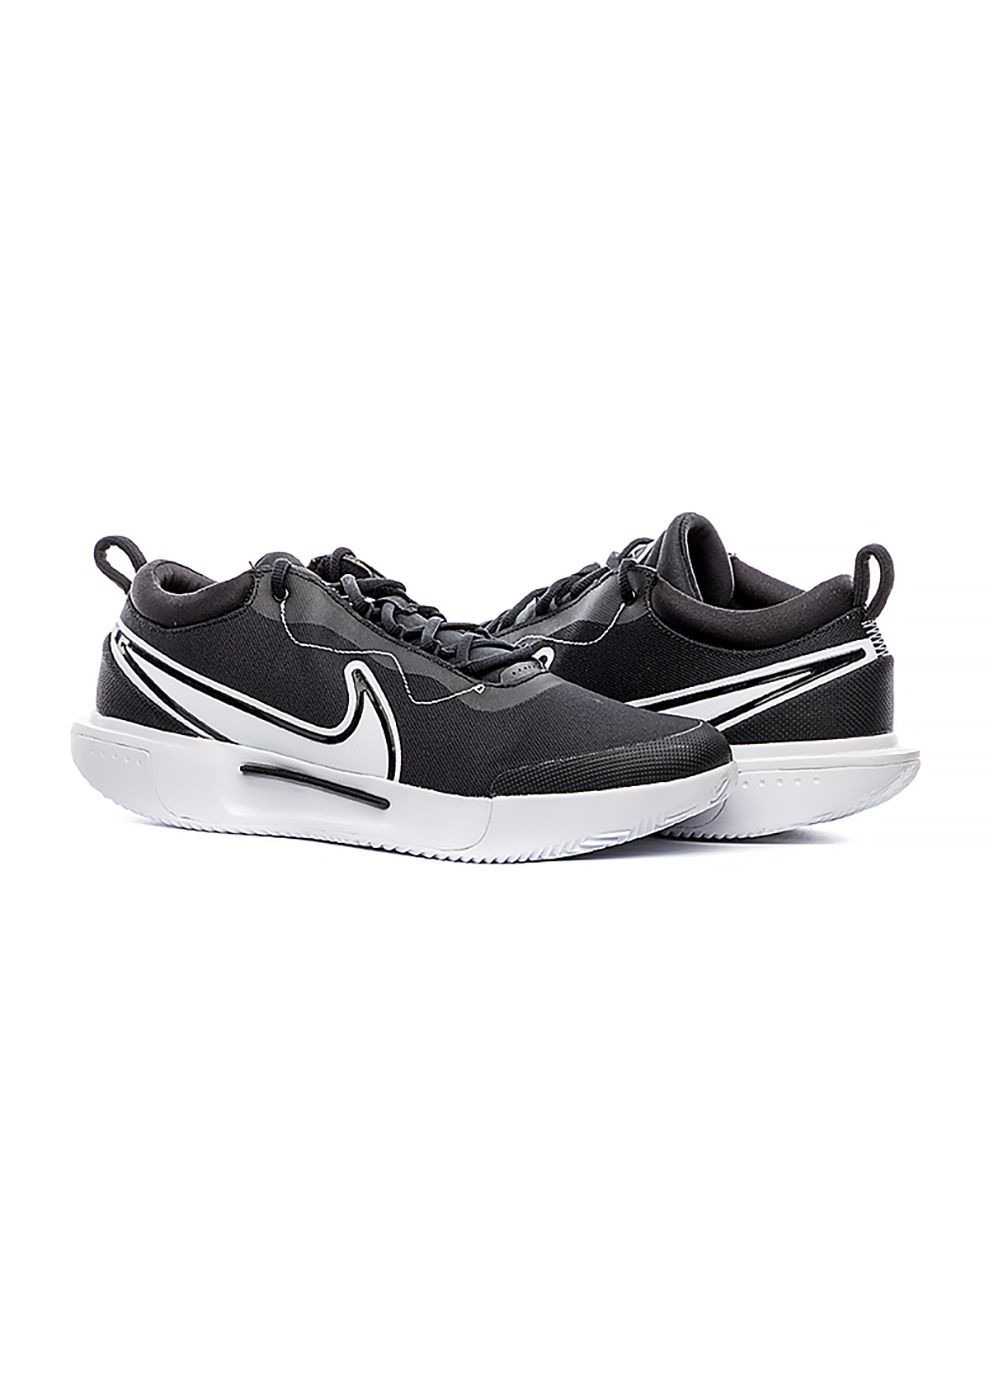 Черные демисезонные мужские кроссовки m zoom court pro cly черный Nike